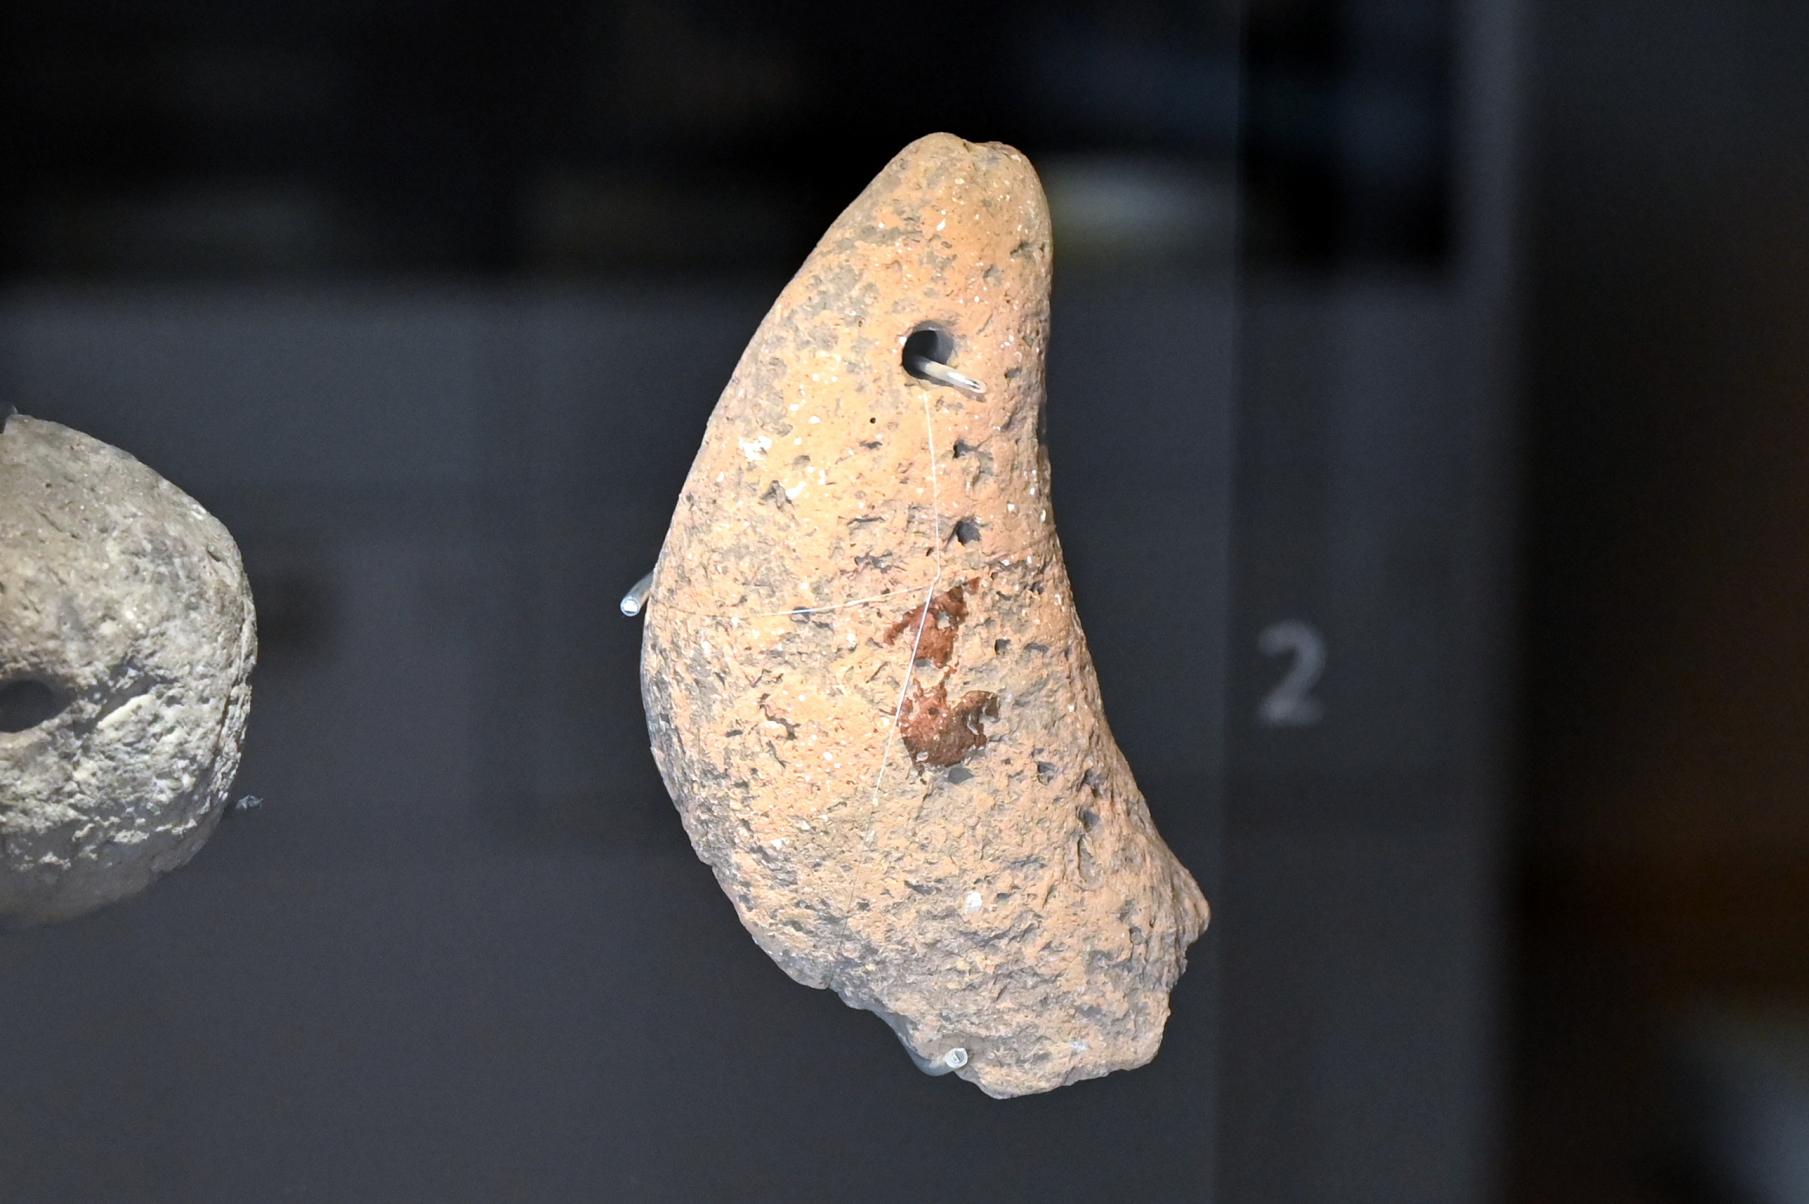 Nierenförmiges Webgewicht, Neolithikum (Jungsteinzeit), 5500 - 1700 v. Chr., Bild 1/2